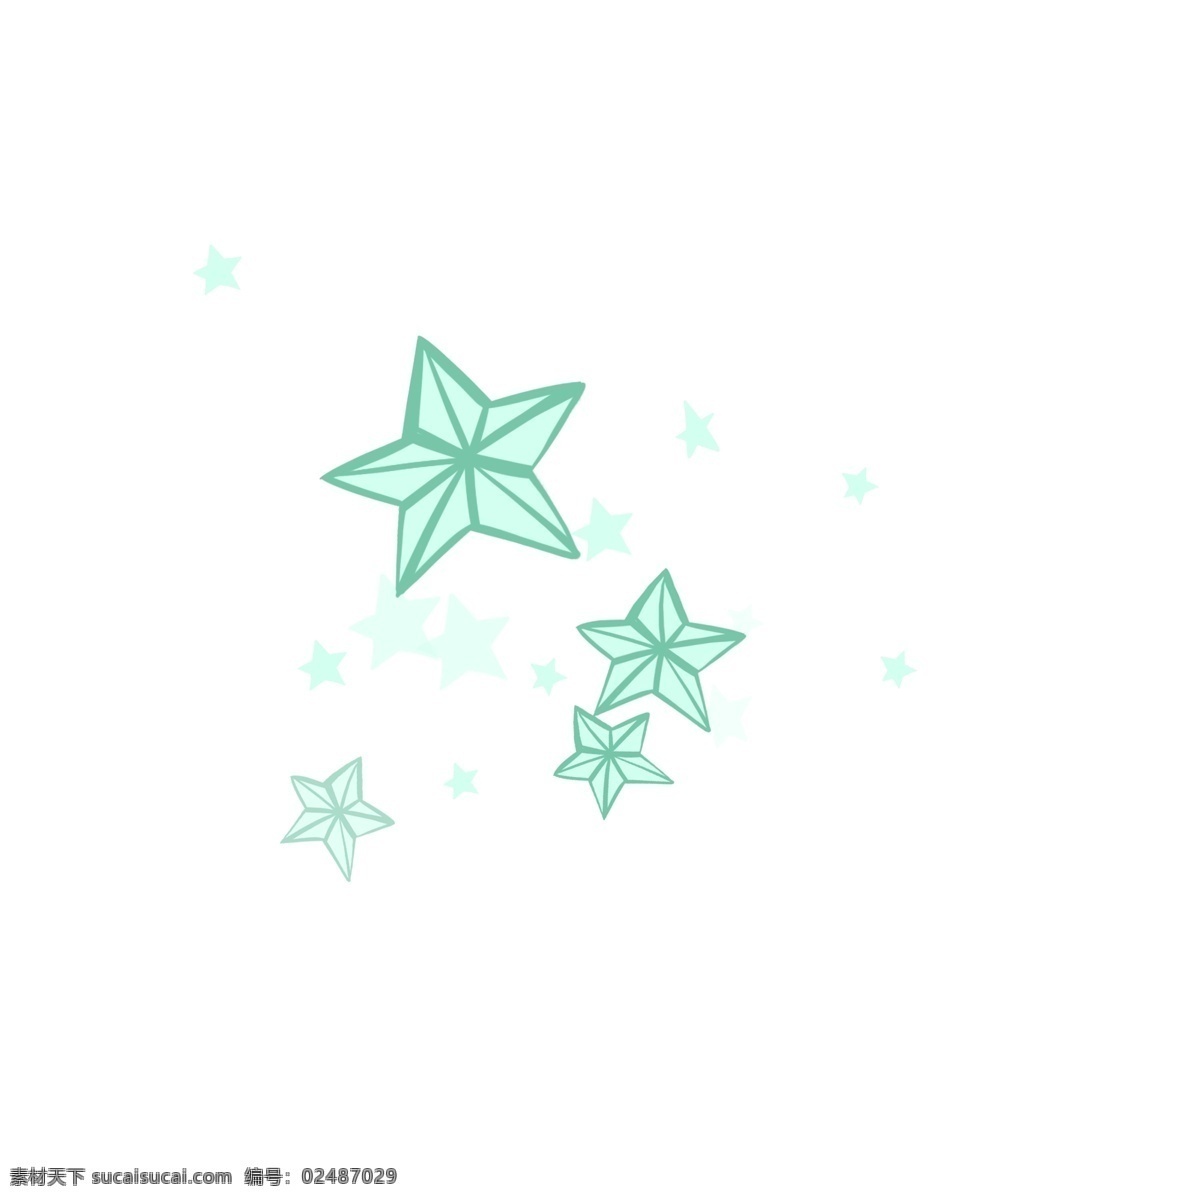 蓝色 晶体 小星星 手绘 原创 透明 底 免 抠 蓝色小星星 水晶 星星 闪 亮晶晶 璀璨 卡通 透明底 免抠 多棱角星星